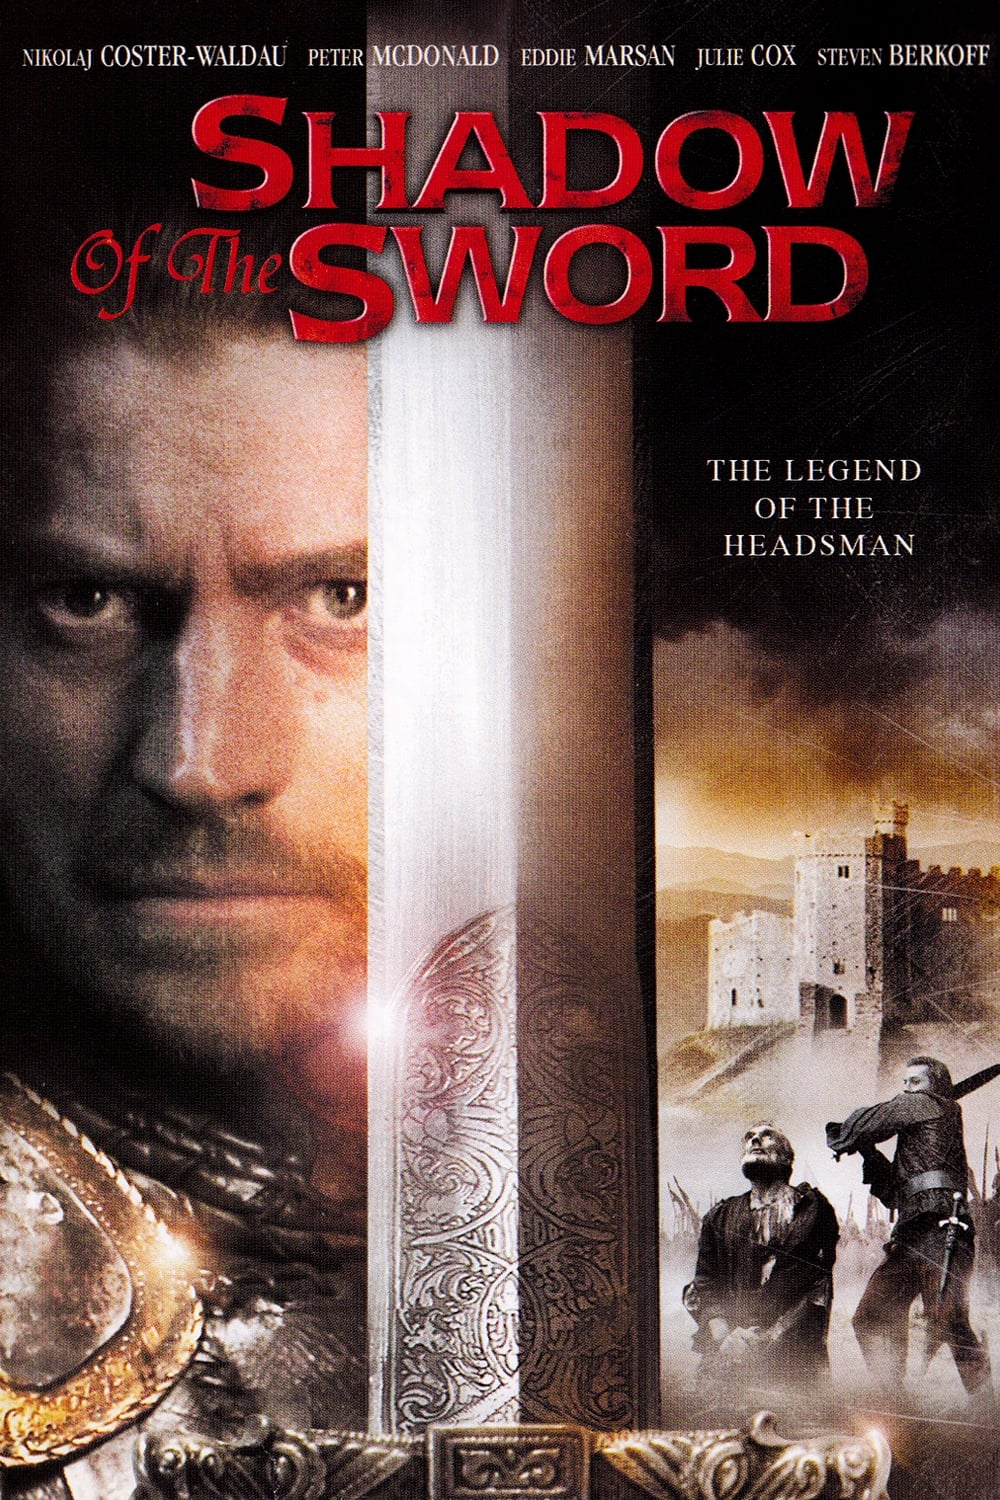 The Headsman - L'ombra della spada film